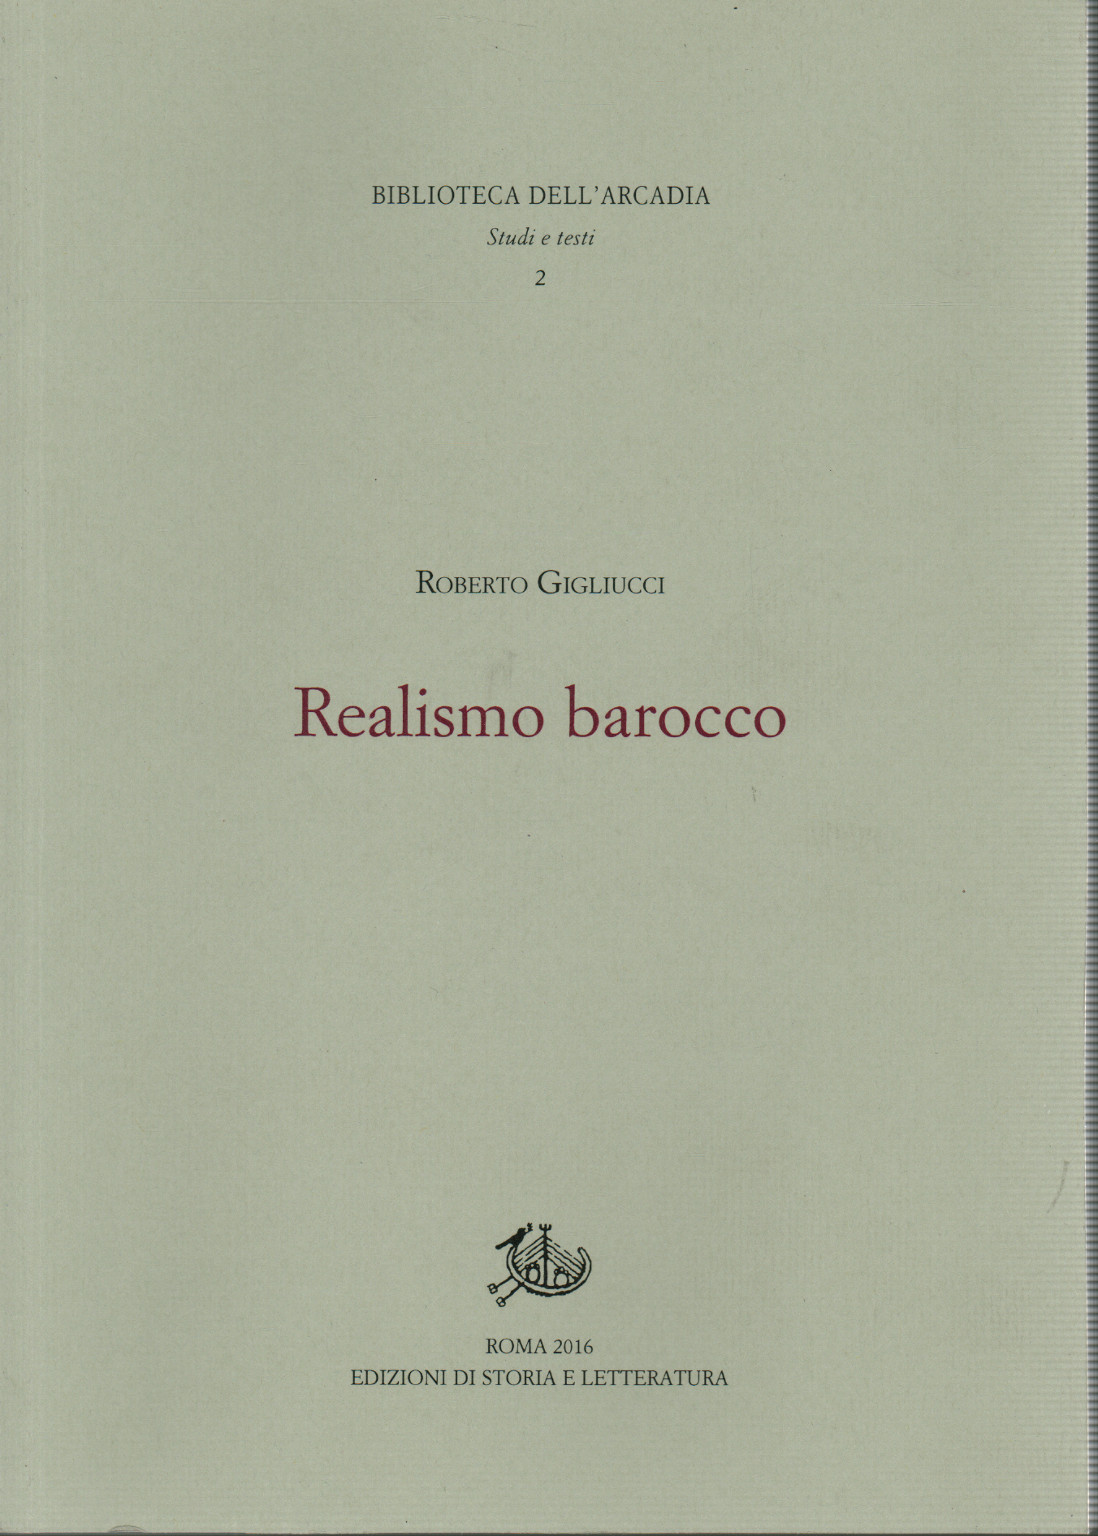 El realismo, el barroco, s.una.